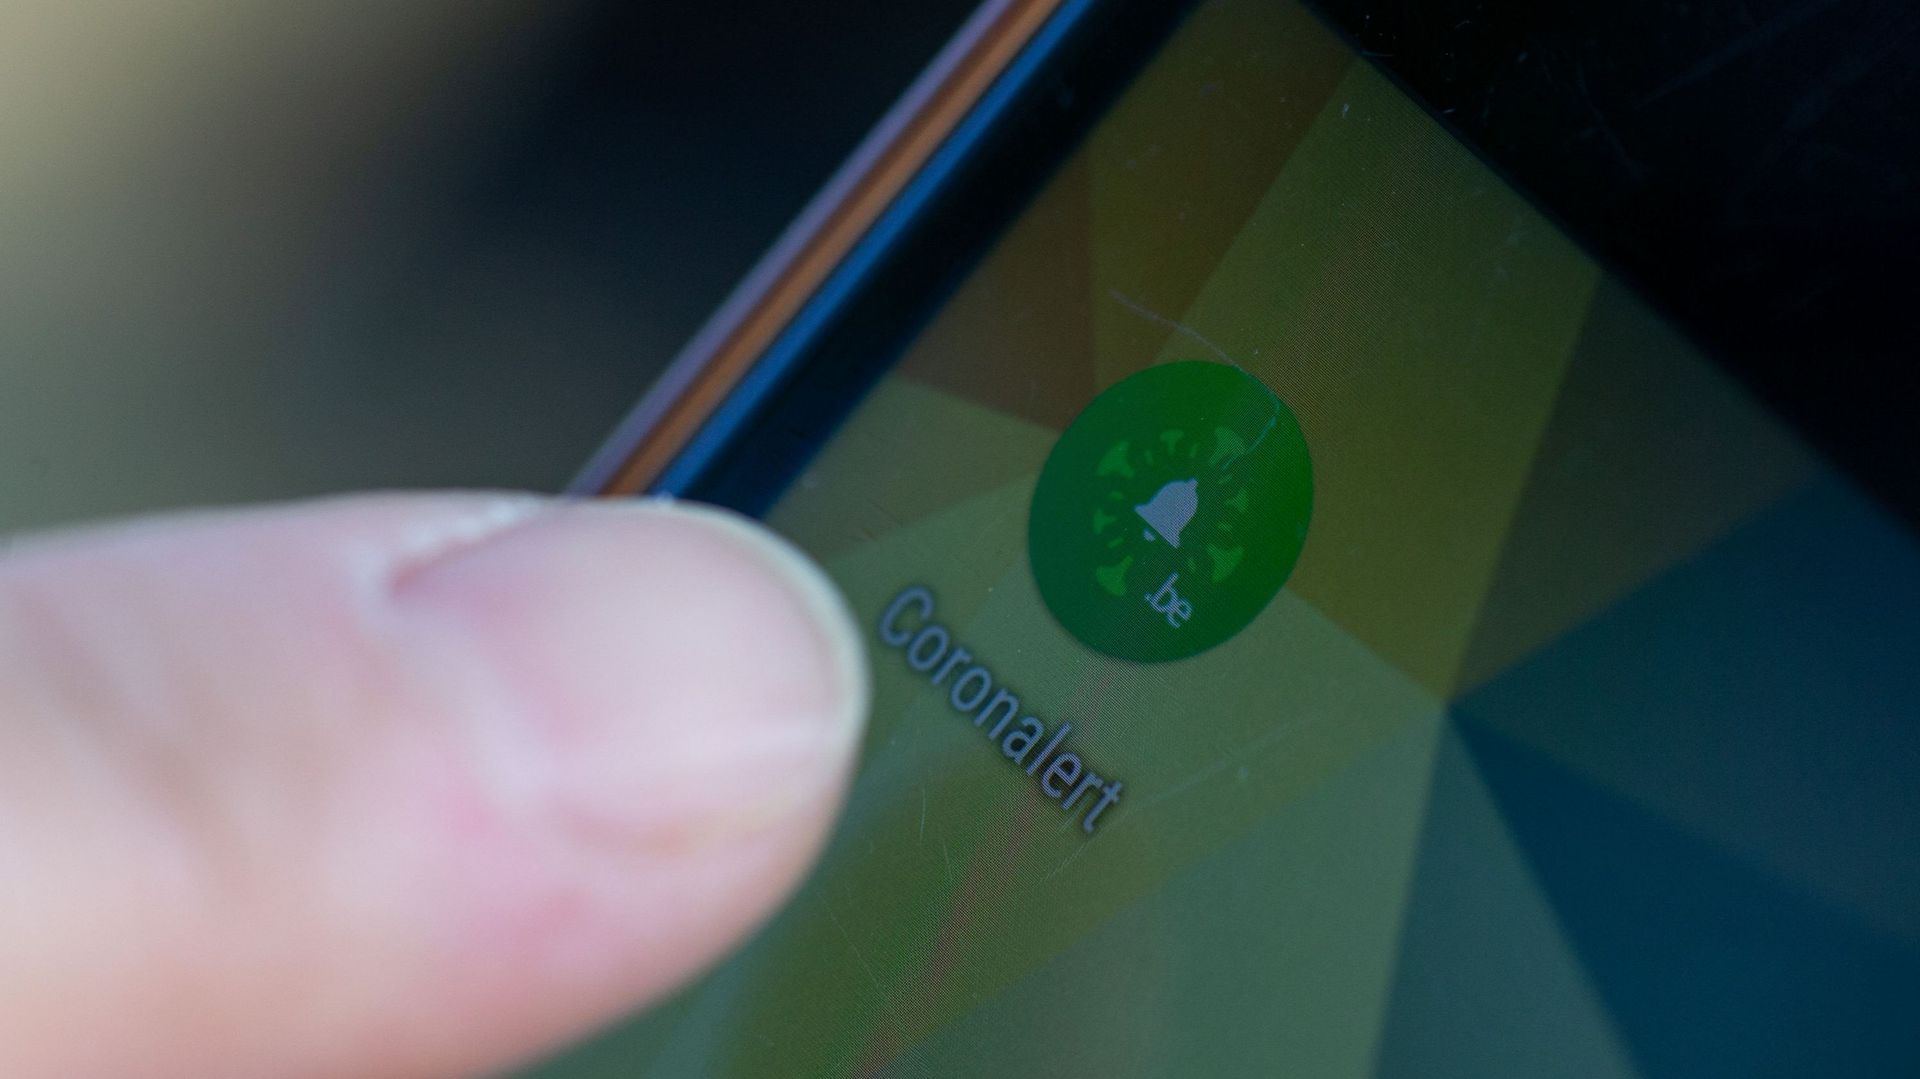 Succès pour Coronalert : un smartphone sur cinq équipé et 15% de tests signalés positifs